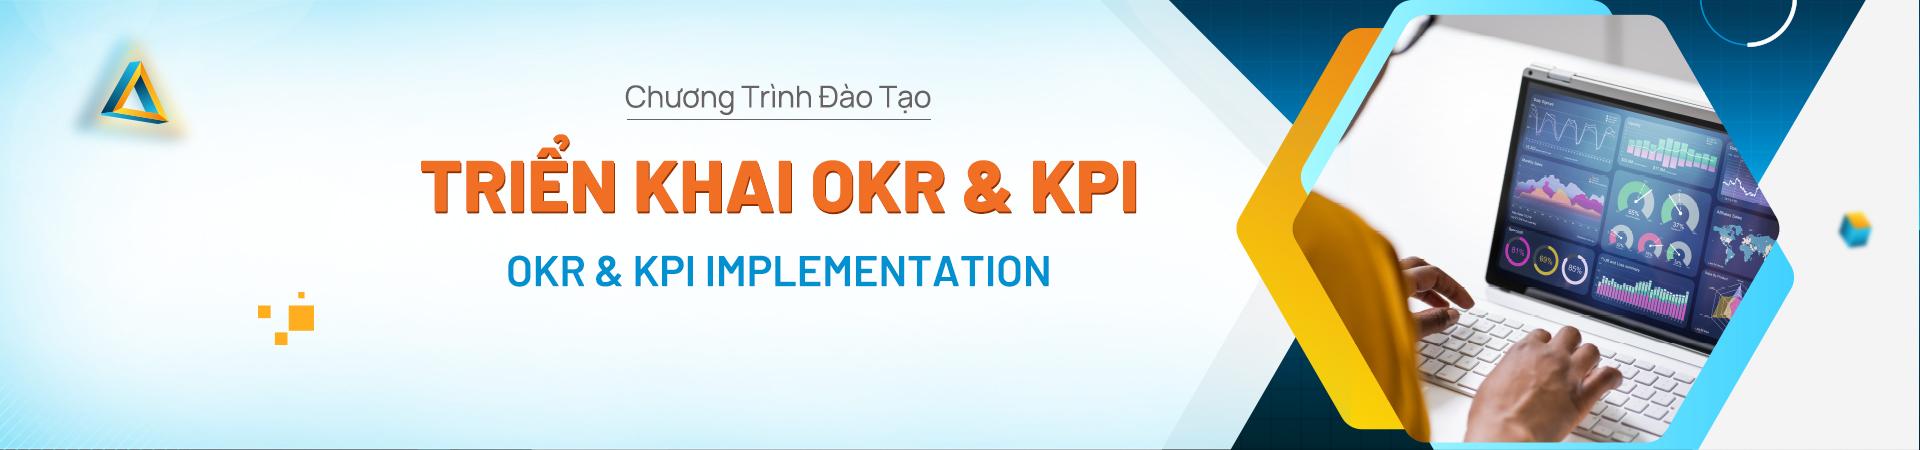 TRIỂN KHAI OKR & KPI